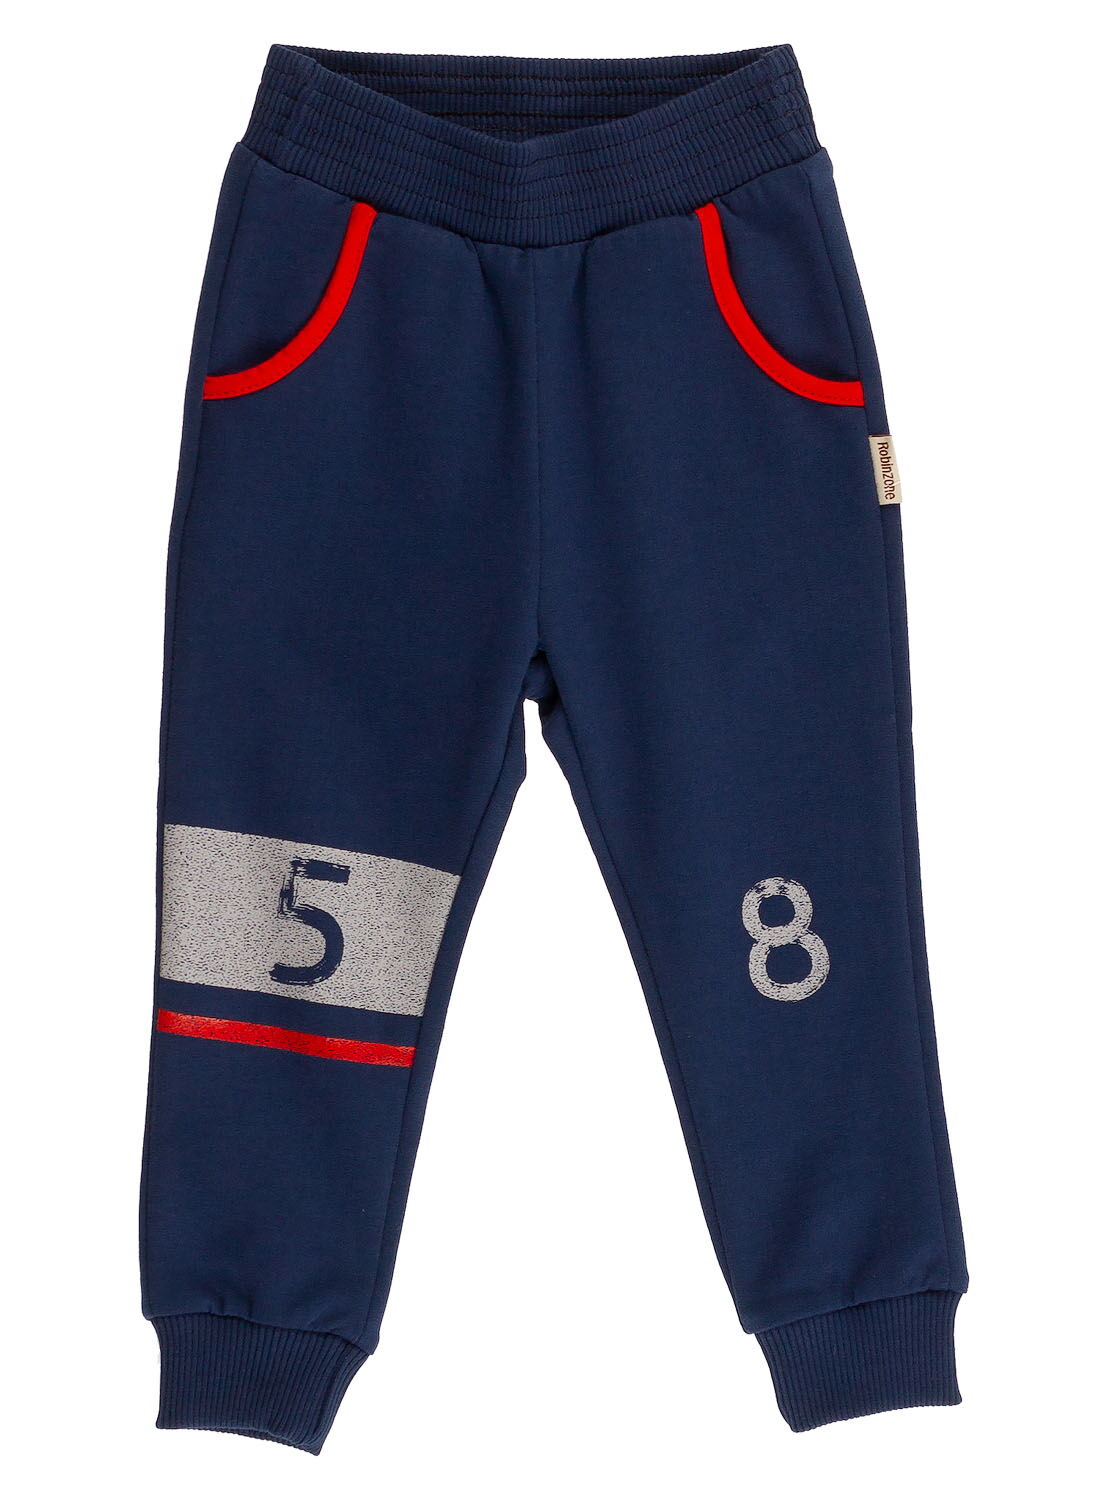 Спортивные штаны для мальчика Robinzone темно-синие ШТ-213 - цена